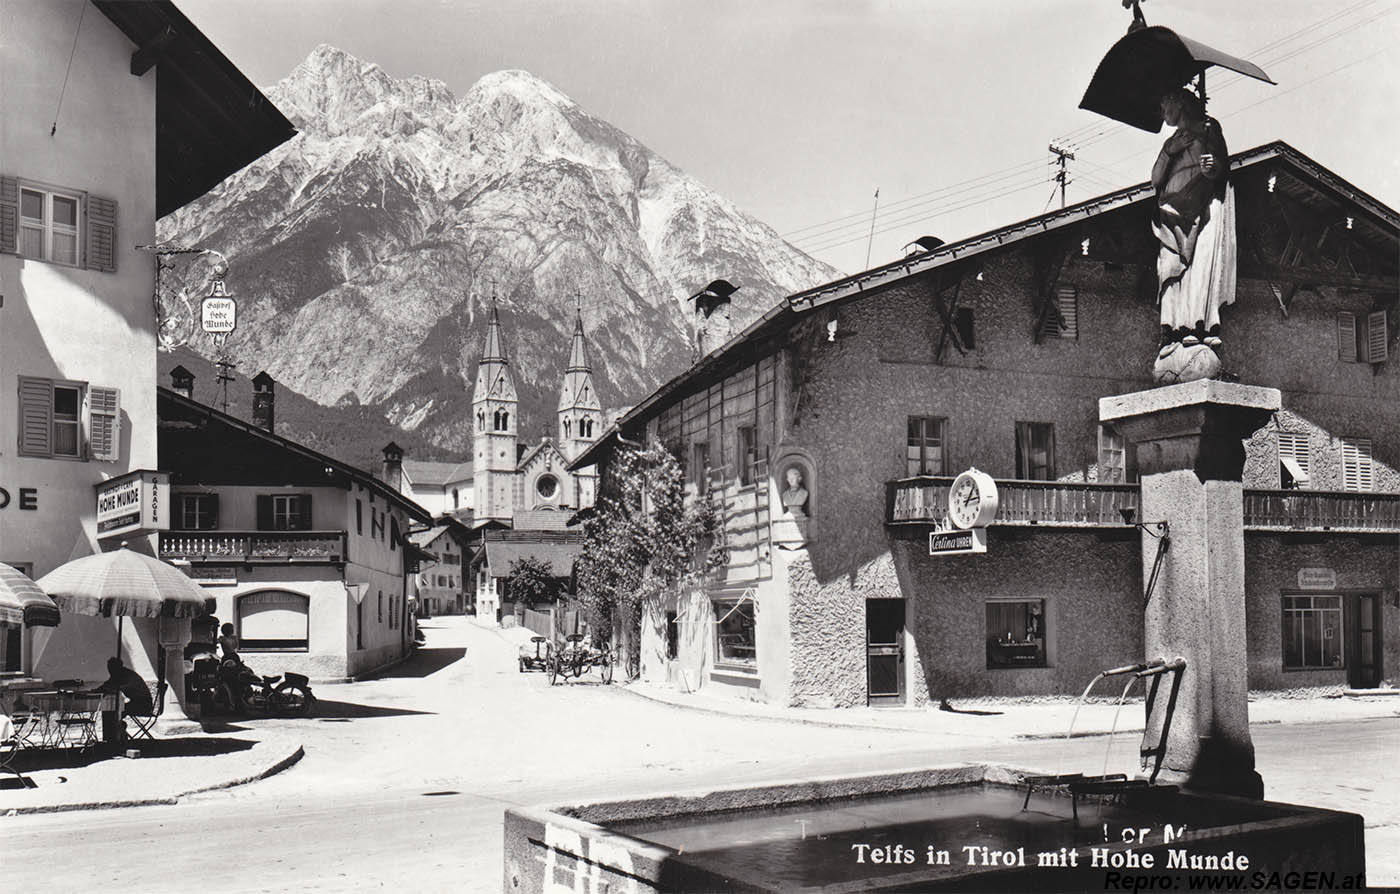 Telfs in Tirol mit Hohe Munde